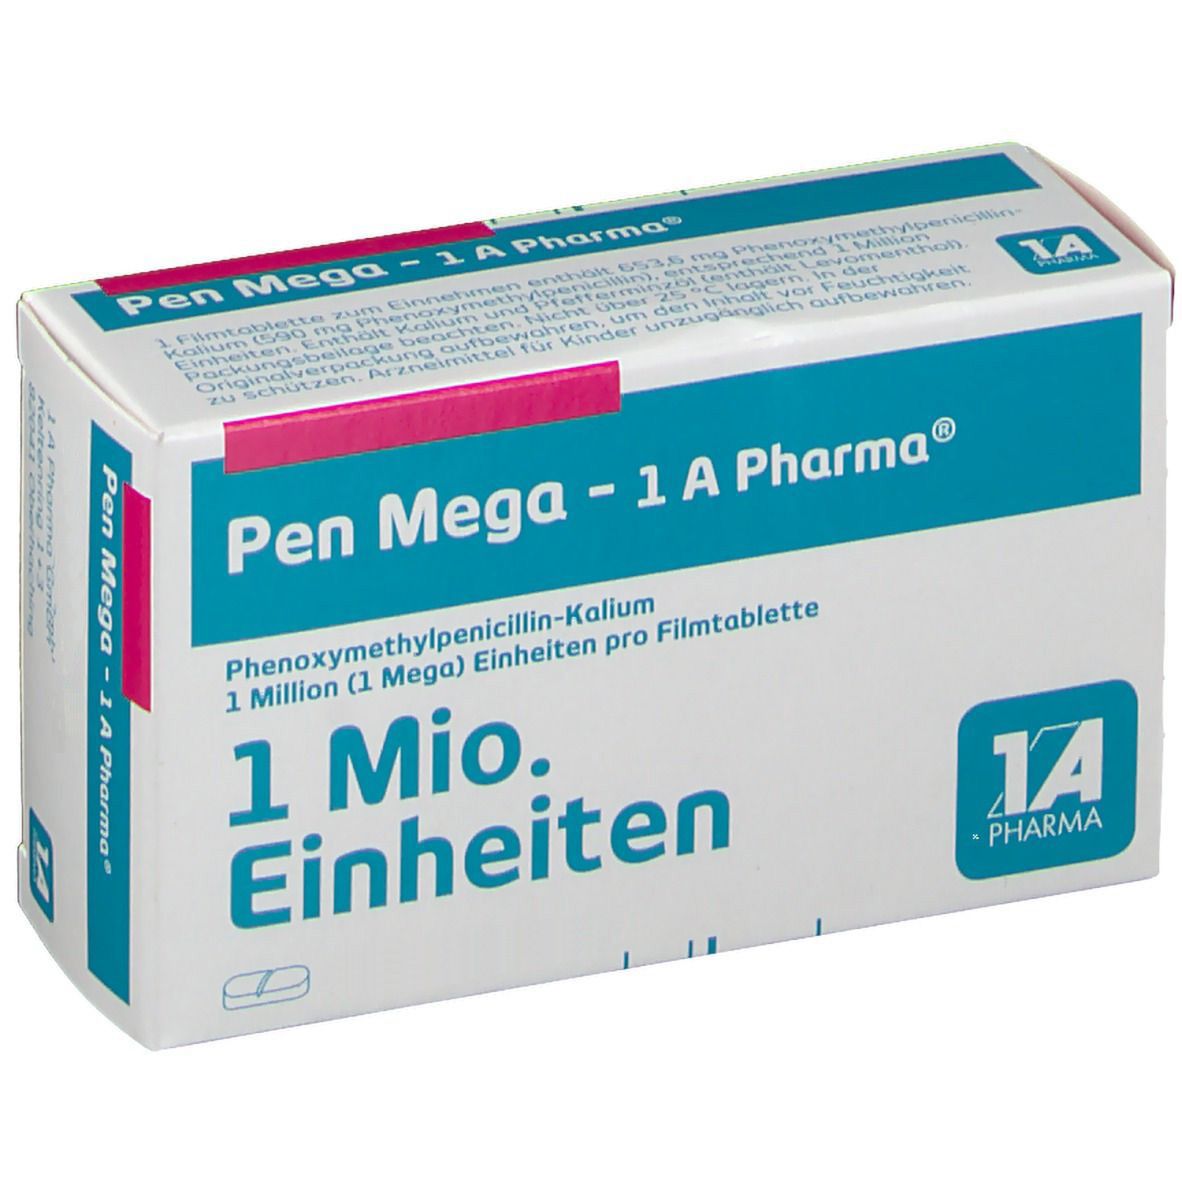 Pen Mega - 1 A Pharma®